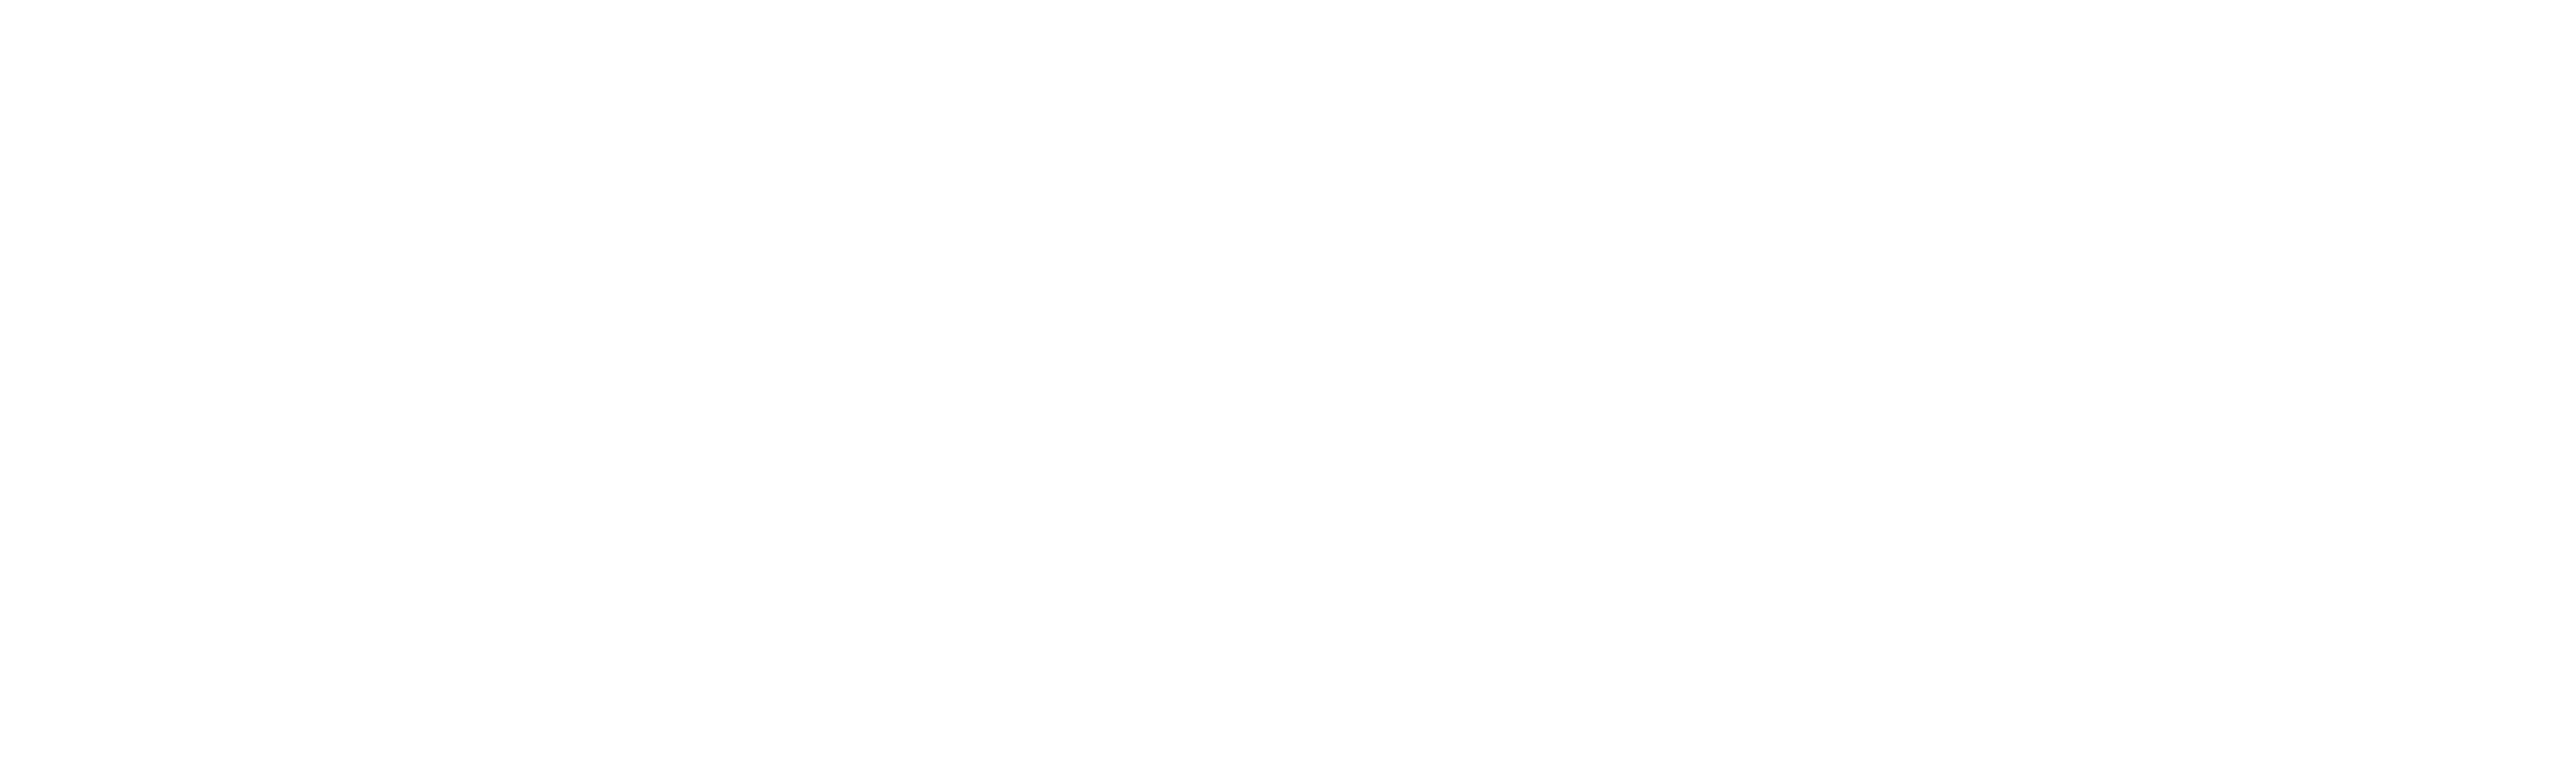 Leeds City Council - Leeds City Council Logo White (5307x1506), Png Download